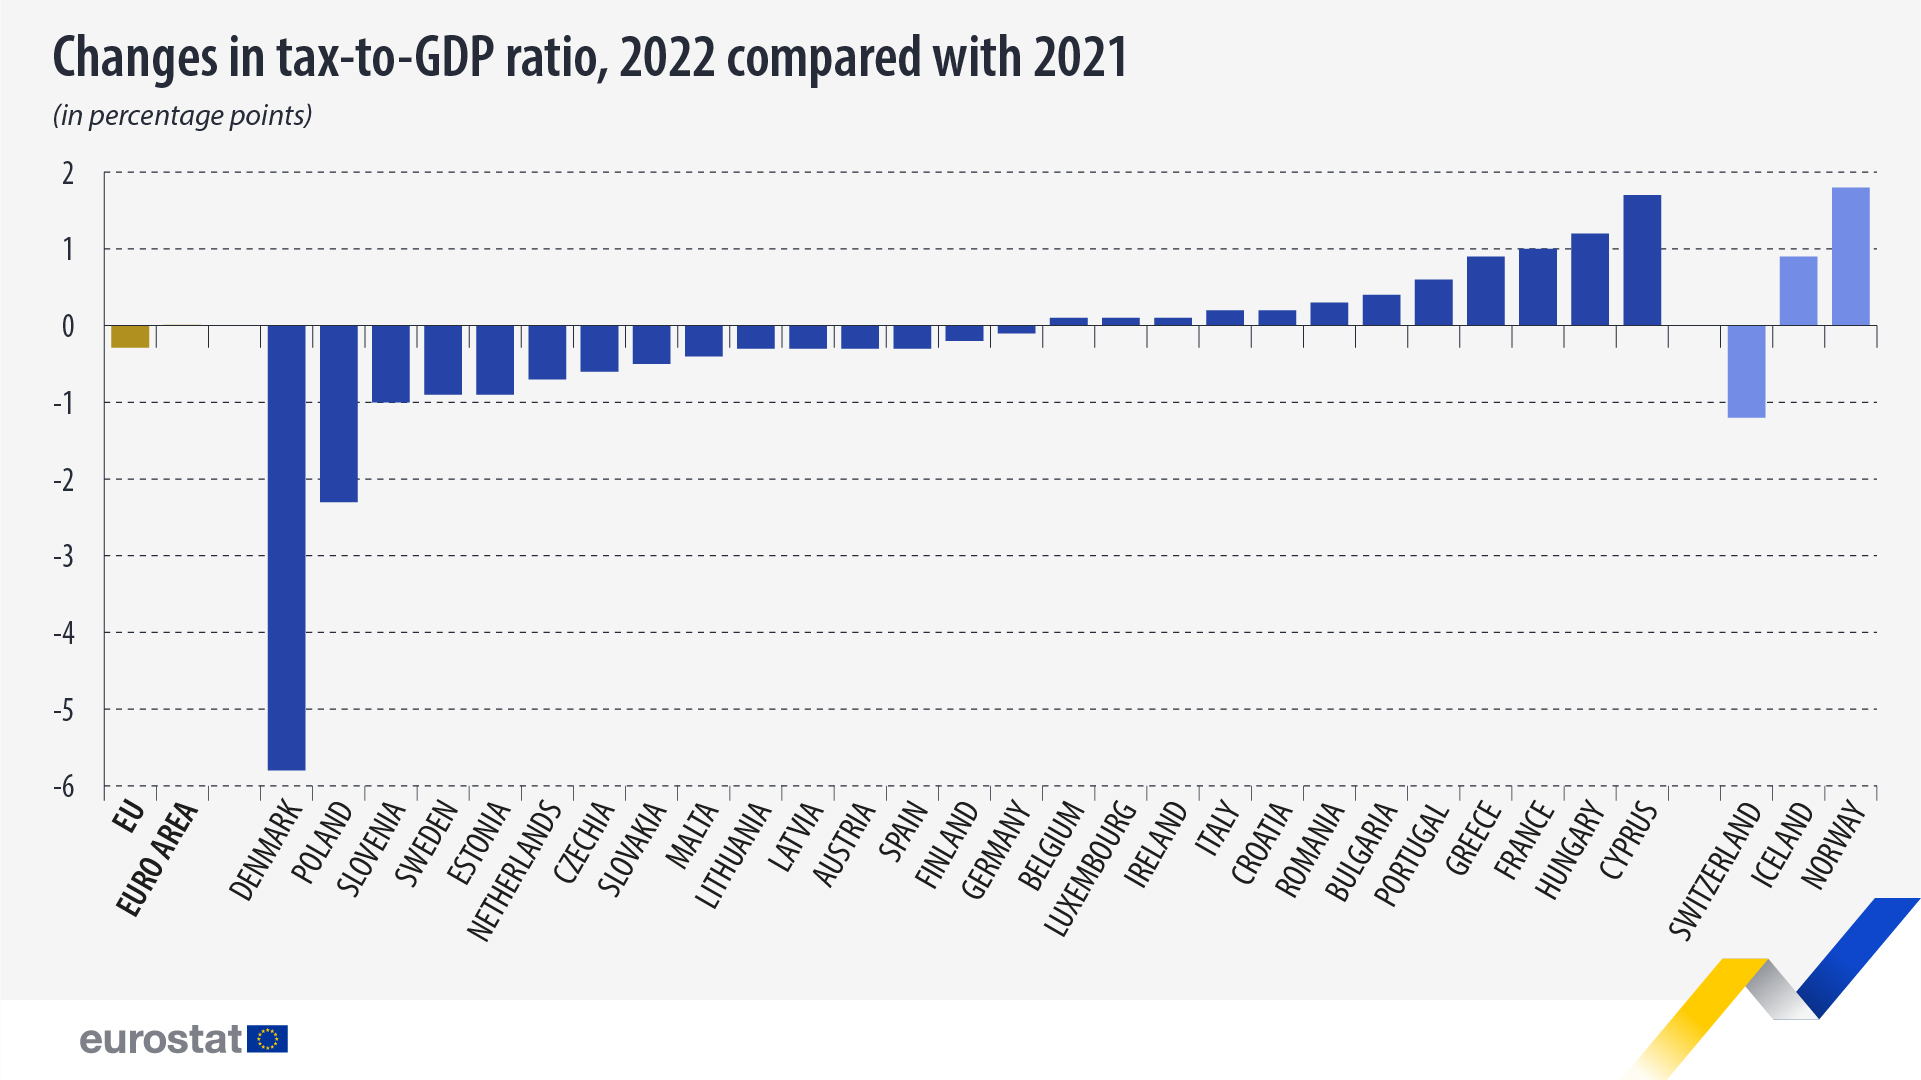 ραβδόγραμμα: Μεταβολές στον λόγο φόρου προς ΑΕΠ, 2022 σε σύγκριση με το 2021 (σε ποσοστιαίες μονάδες)